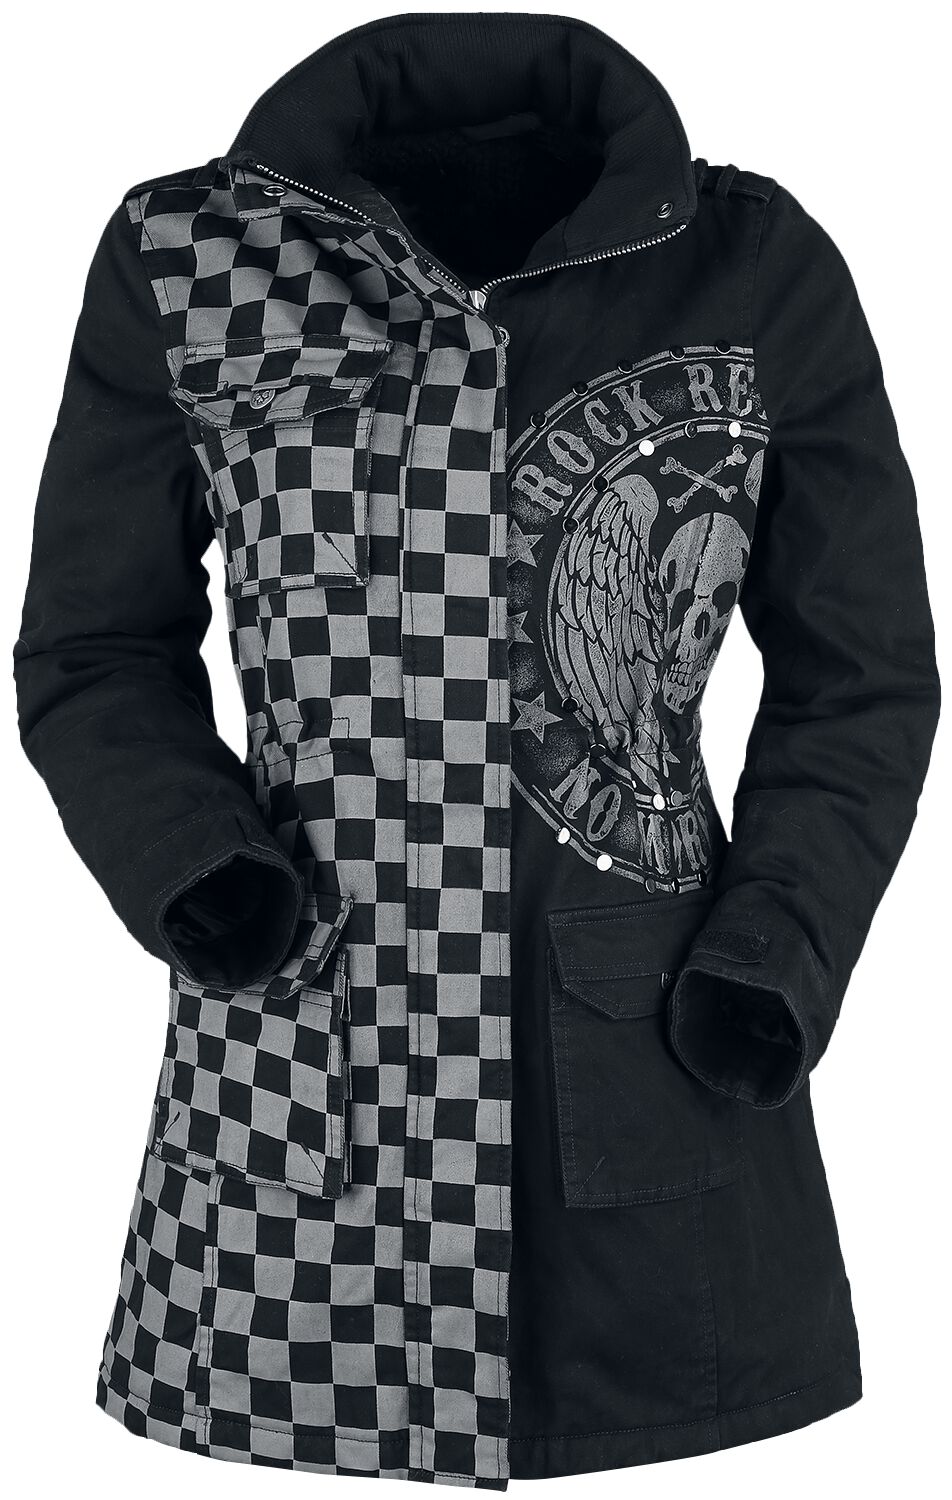 Rock Rebel by EMP schwarz/graue Jacke mit Nieten und Print Winterjacke grau schwarz in XL